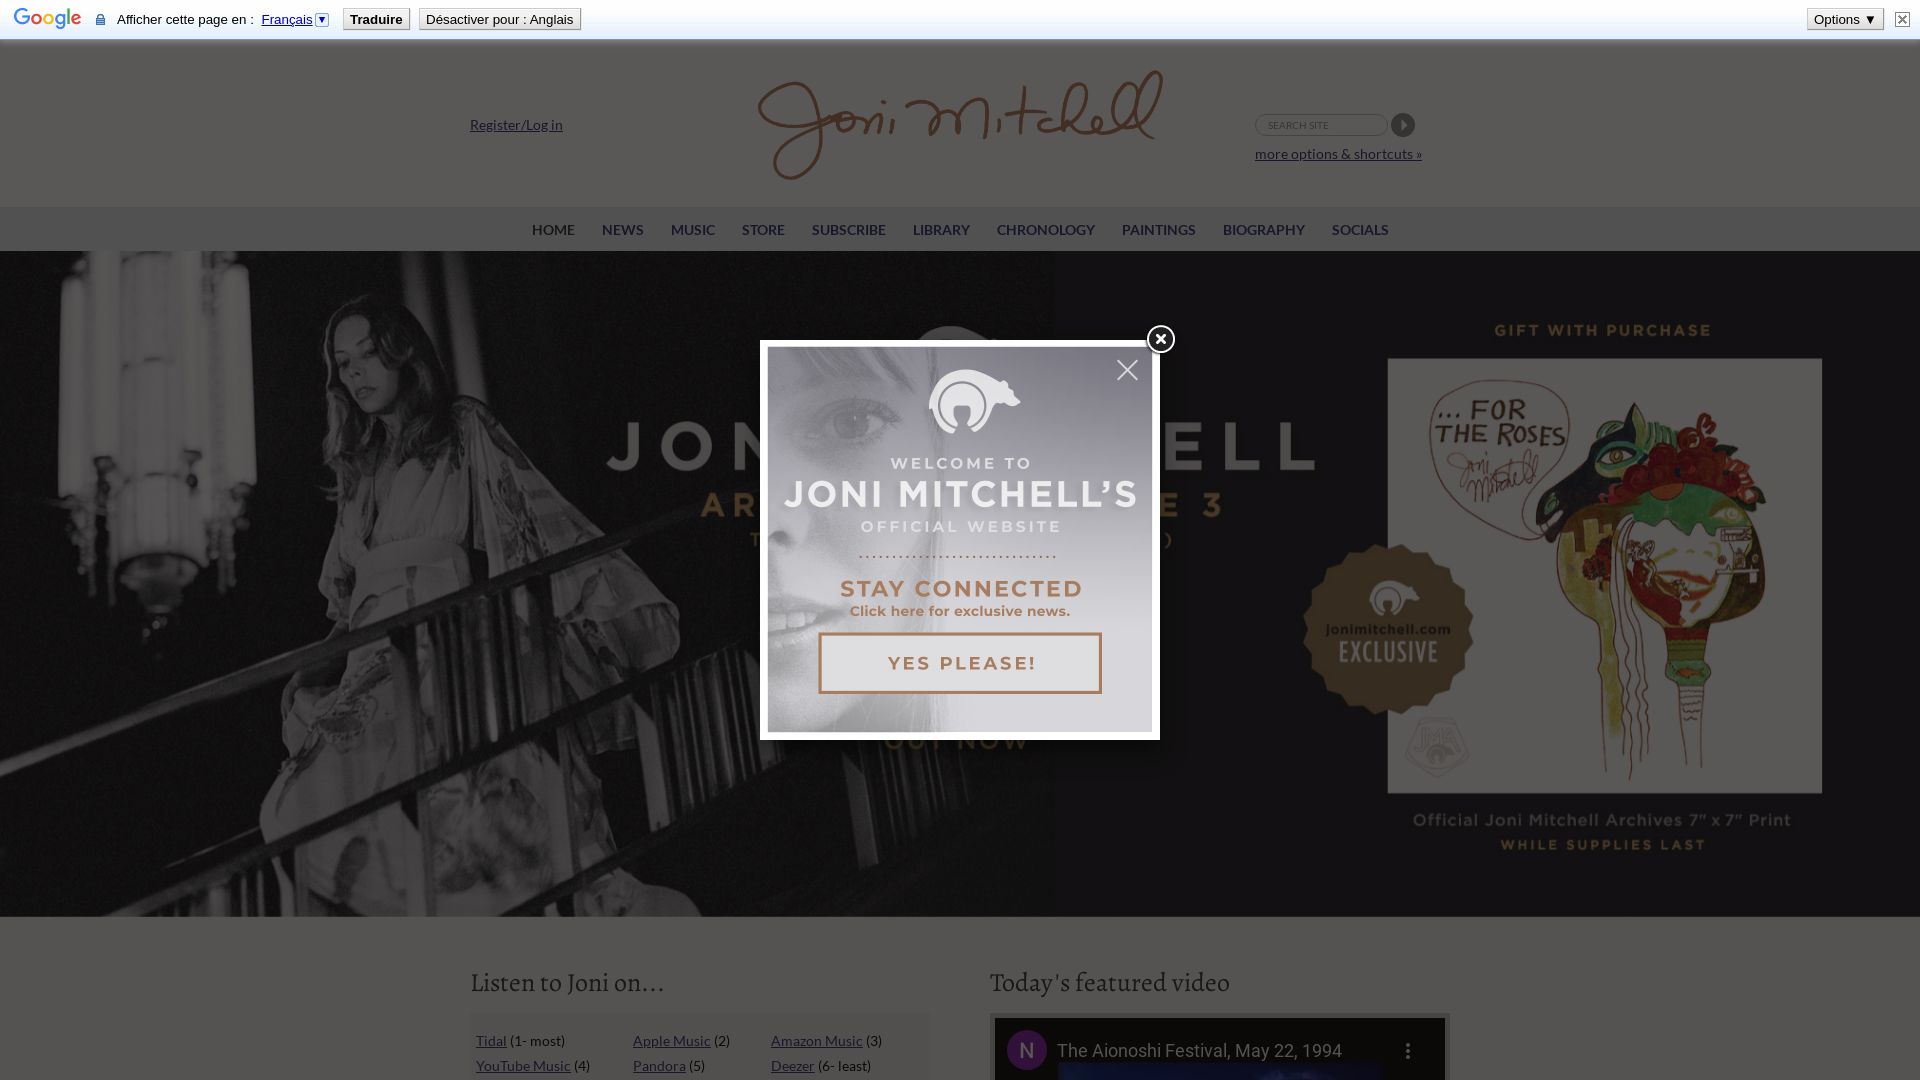 Website status jonimitchell.com is   ONLINE